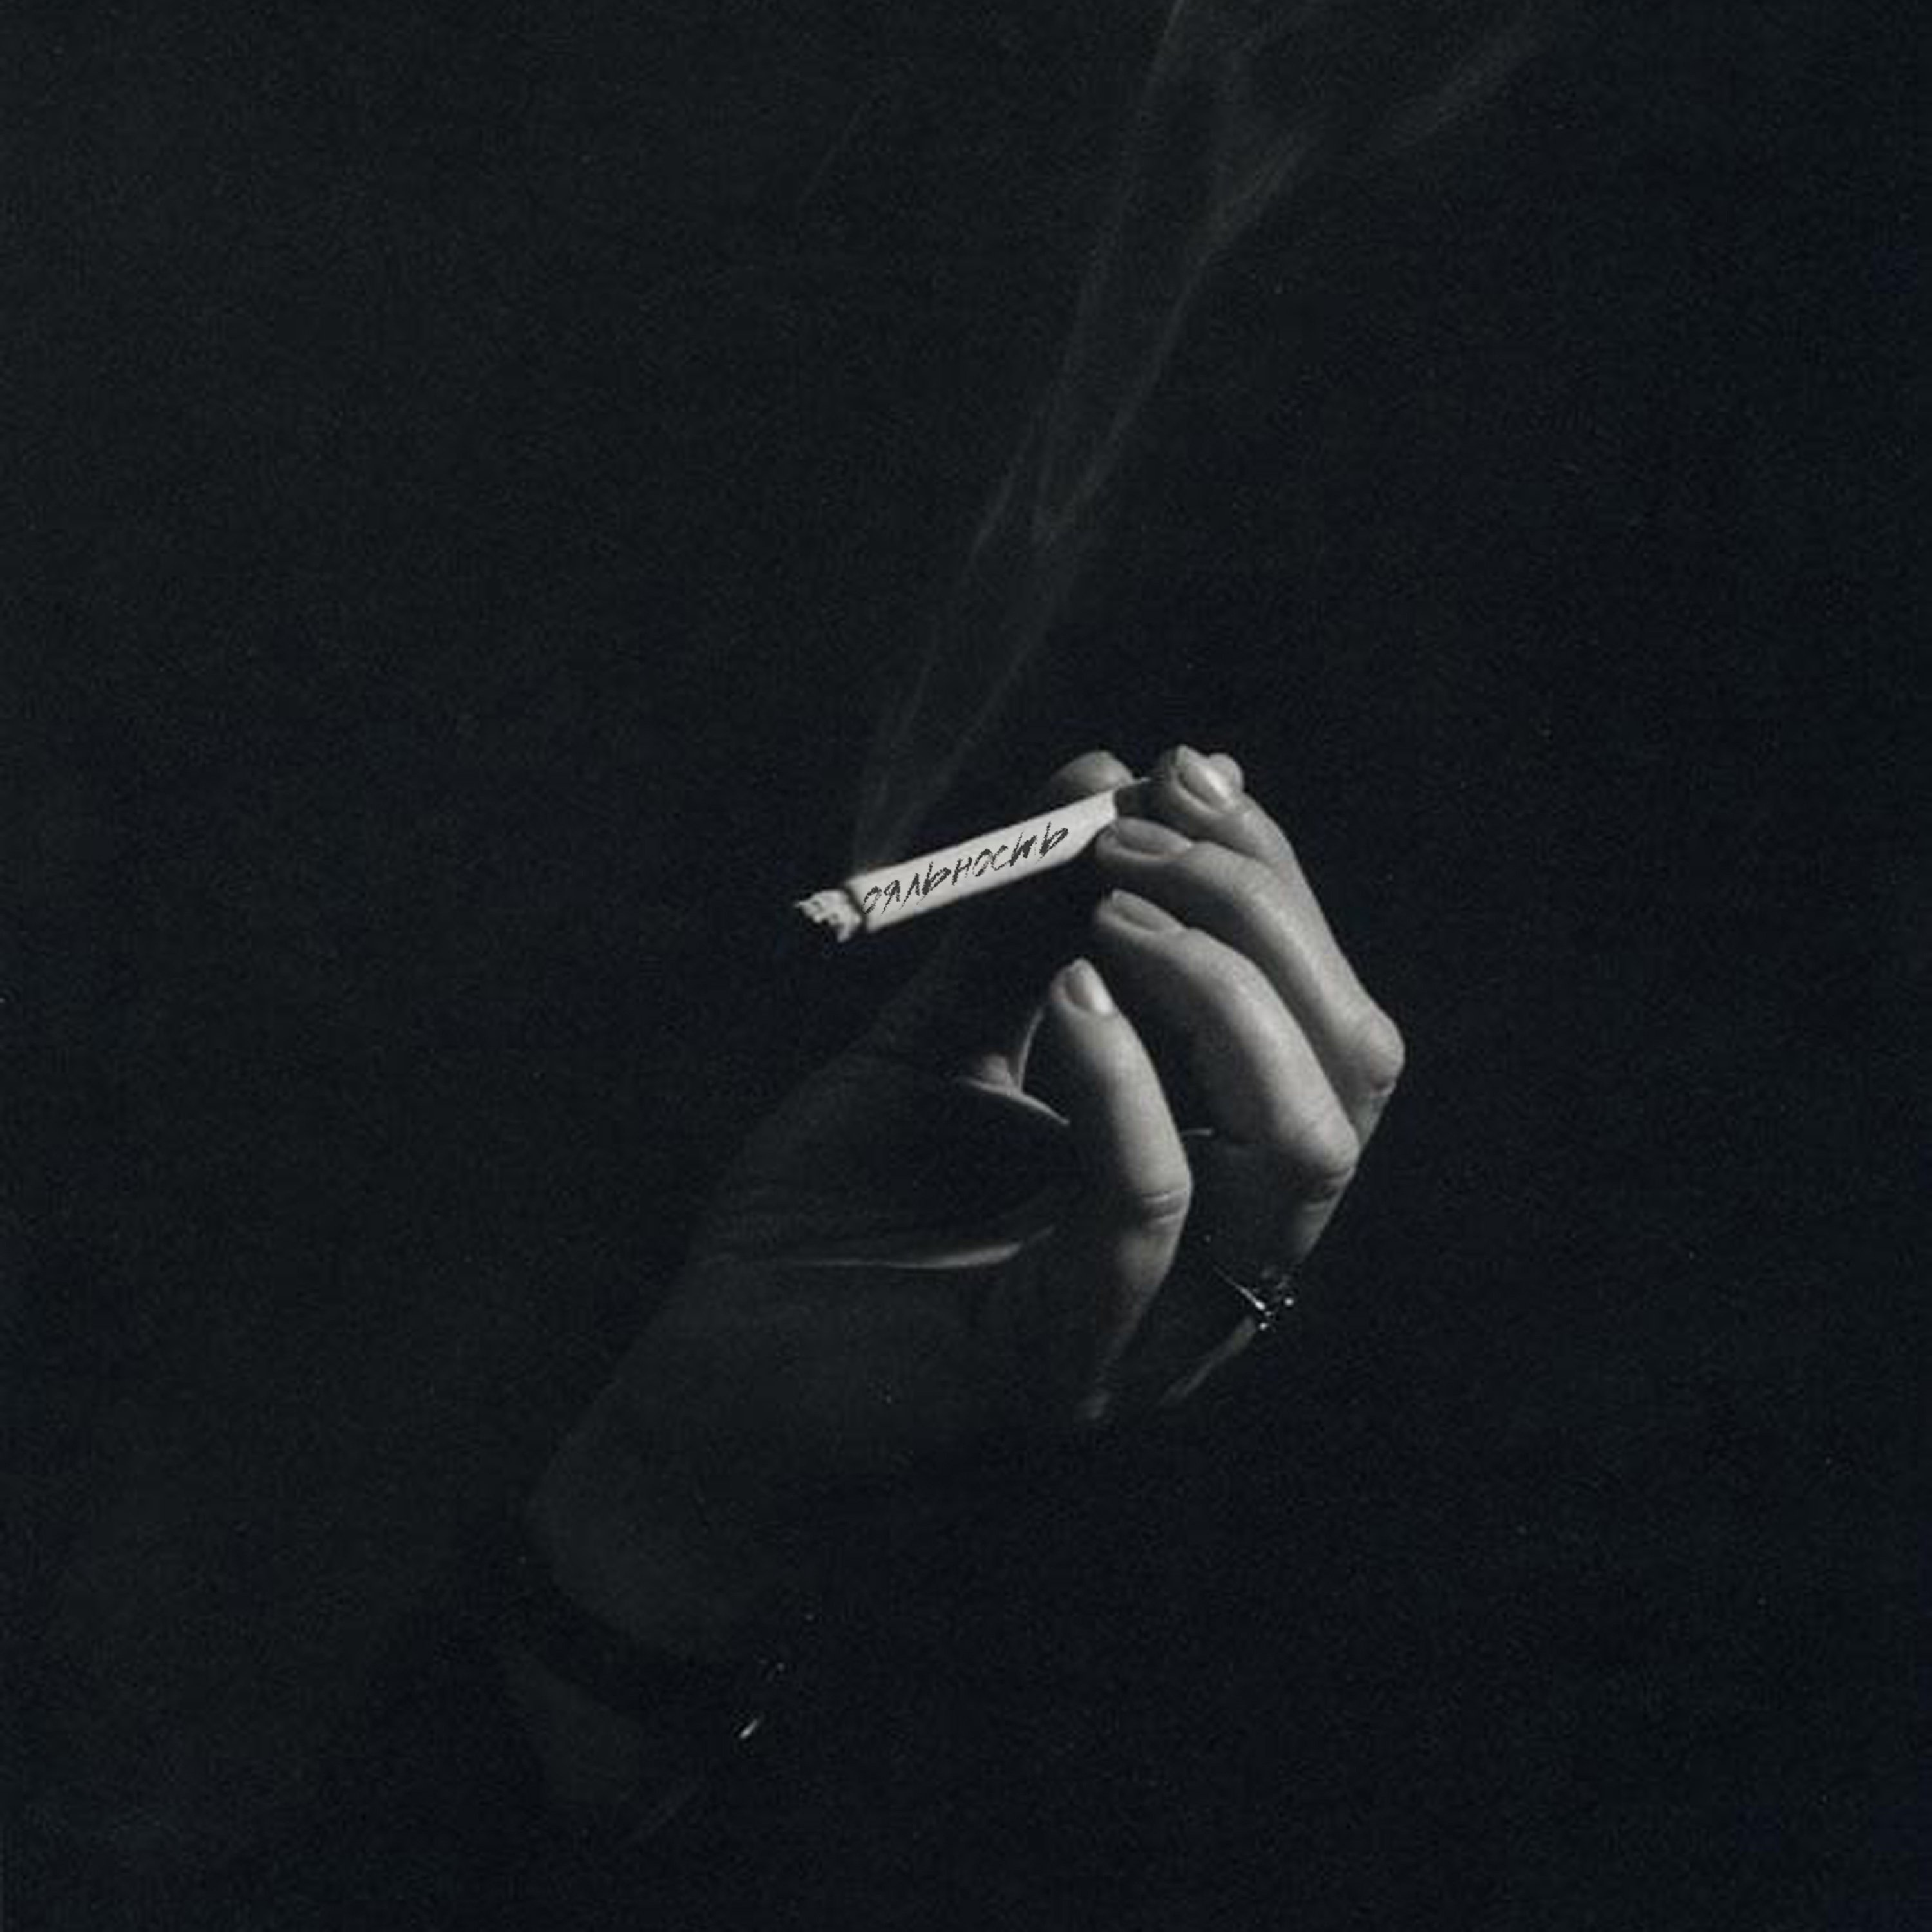 Вновь сигарета. Сигареты Эстетика. Мужская рука с сигаретой. Сигаретатв руке еа черном фоне. Курение Эстетика.